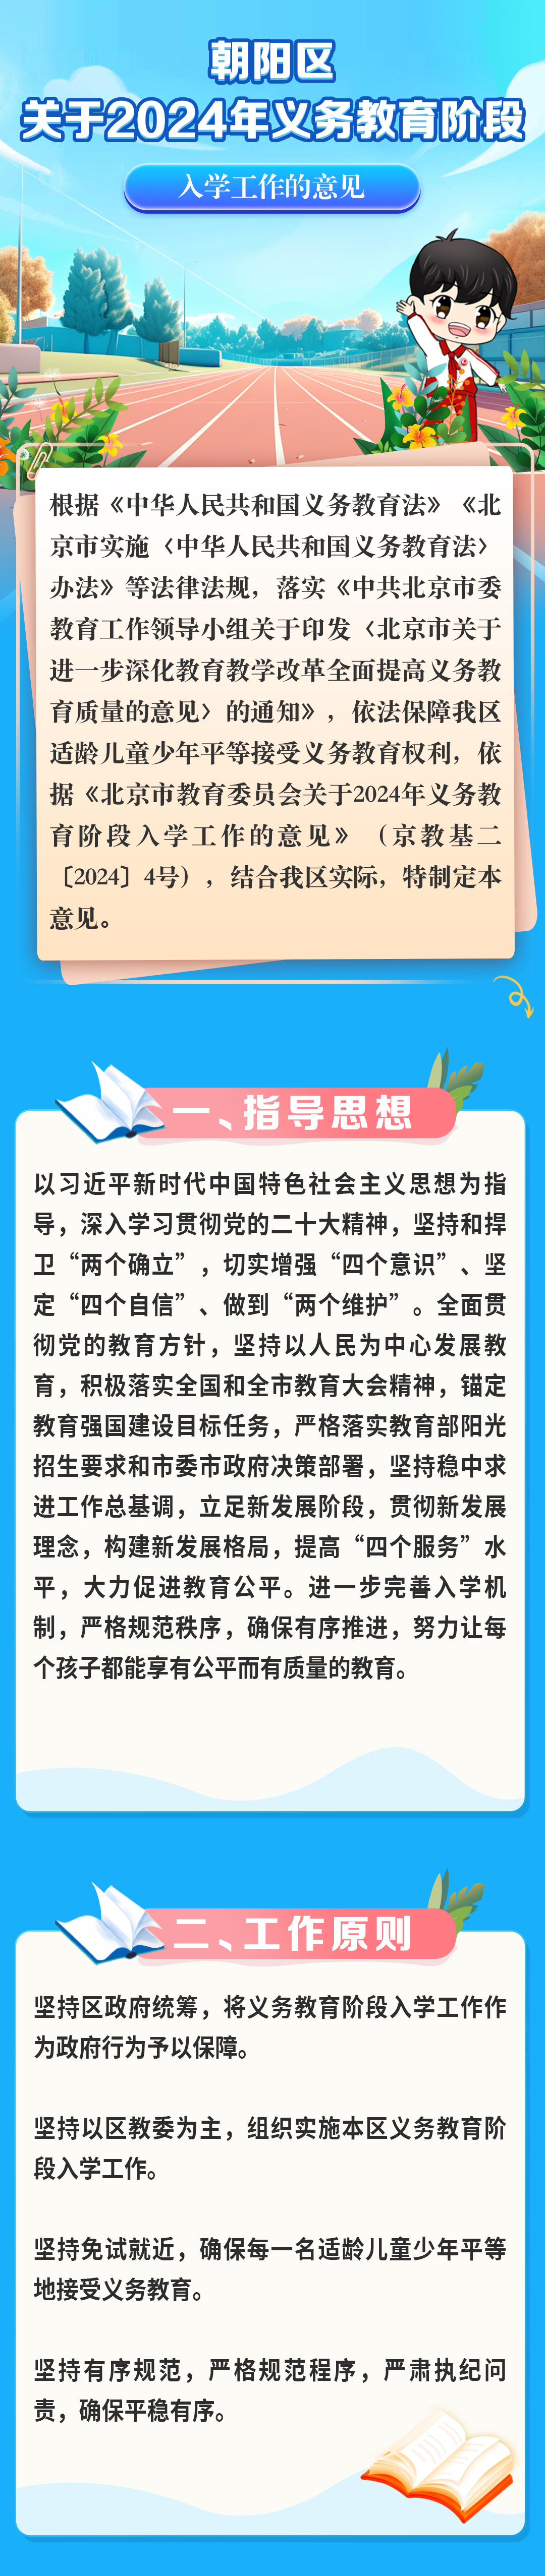 北京朝阳区2024年义务教育阶段入学工作的实施意见